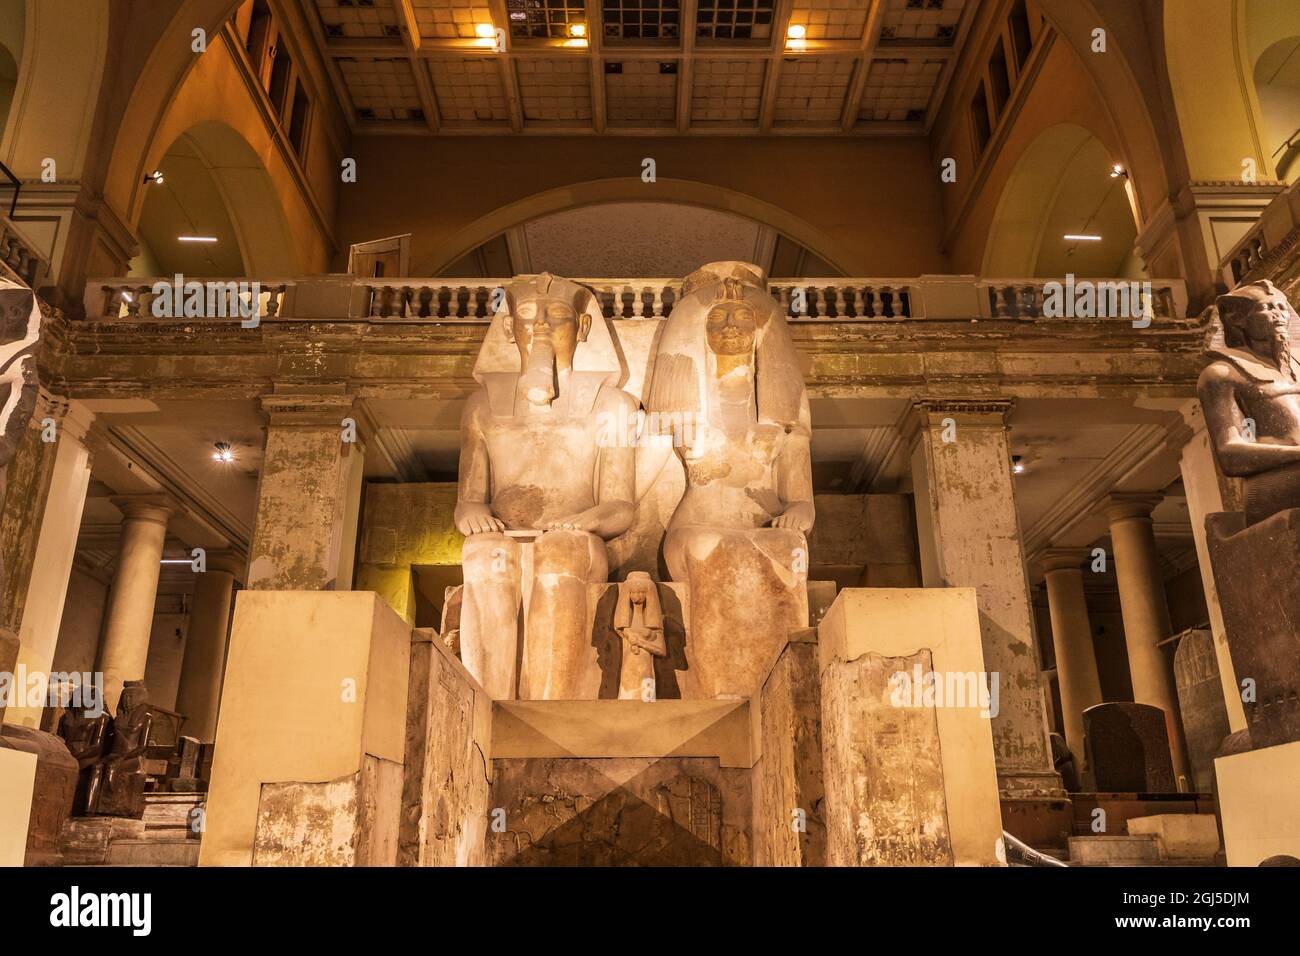 Afrique, Égypte, le Caire. 4 octobre 2018. Statue colossale d'Amenhotep III et de Tiye au Musée égyptien du Caire. (Usage éditorial uniquement) Banque D'Images